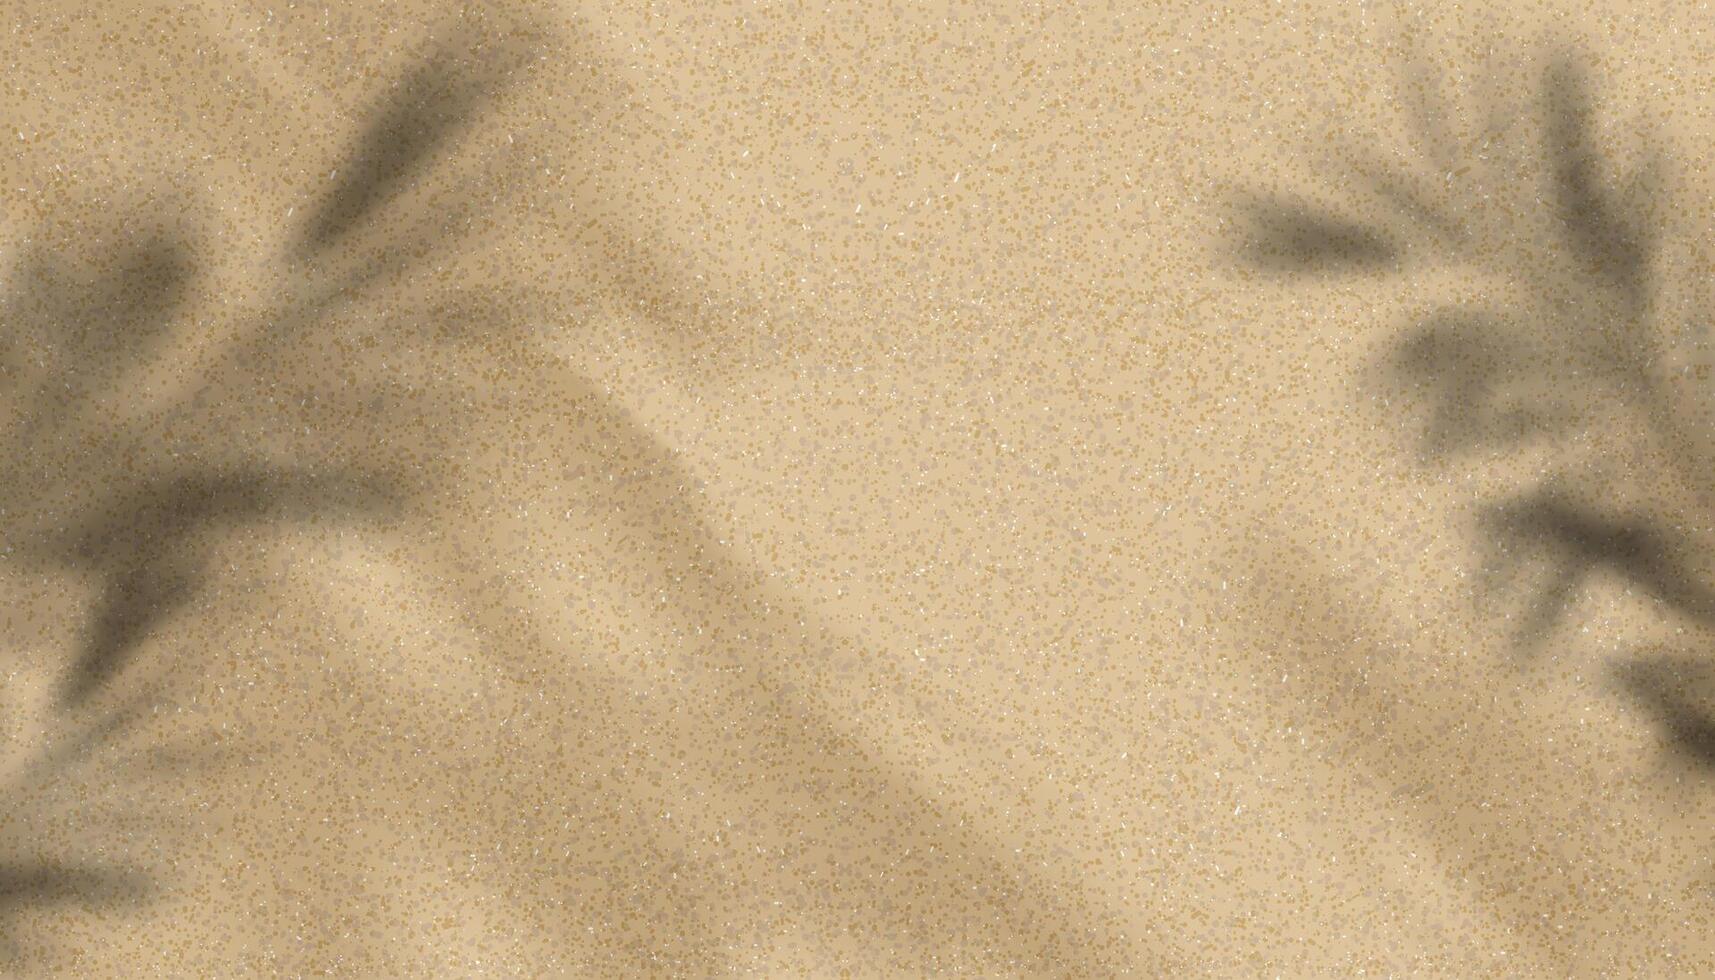 fundo de textura de areia com silhueta de folhas de palmeira, sombra de folha de coco na praia de areia marrom, superfície de areia de vista superior vetorial, pano de fundo dunas de deserto de horizonte largo para apresentação de produtos de verão vetor